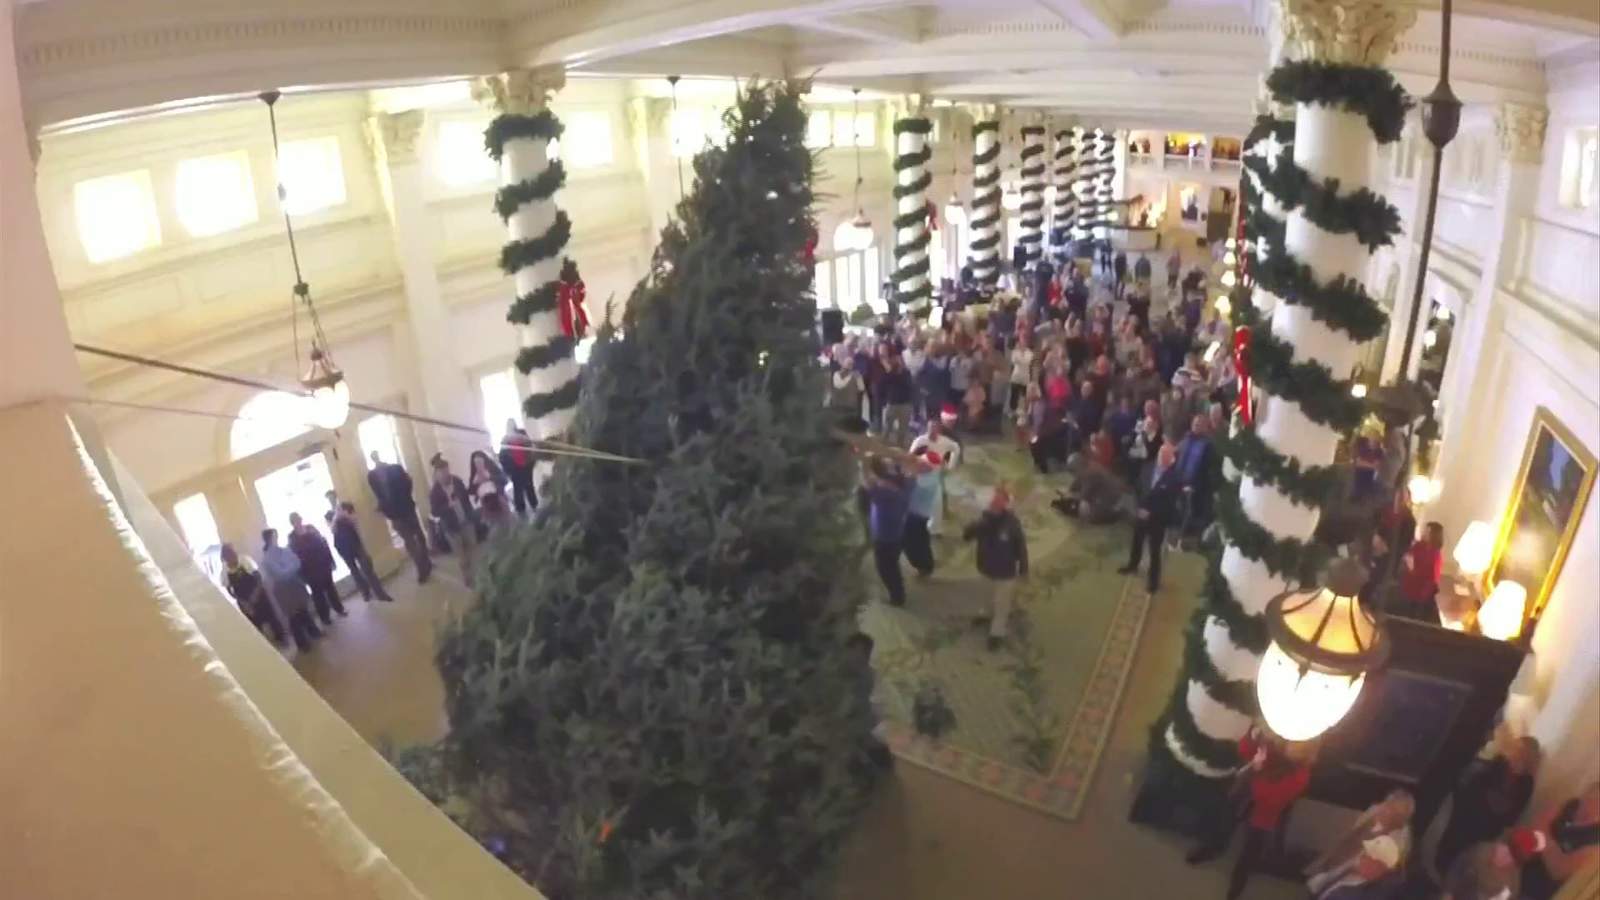 Homestead brings in 22-foot Christmas tree as visitors look on